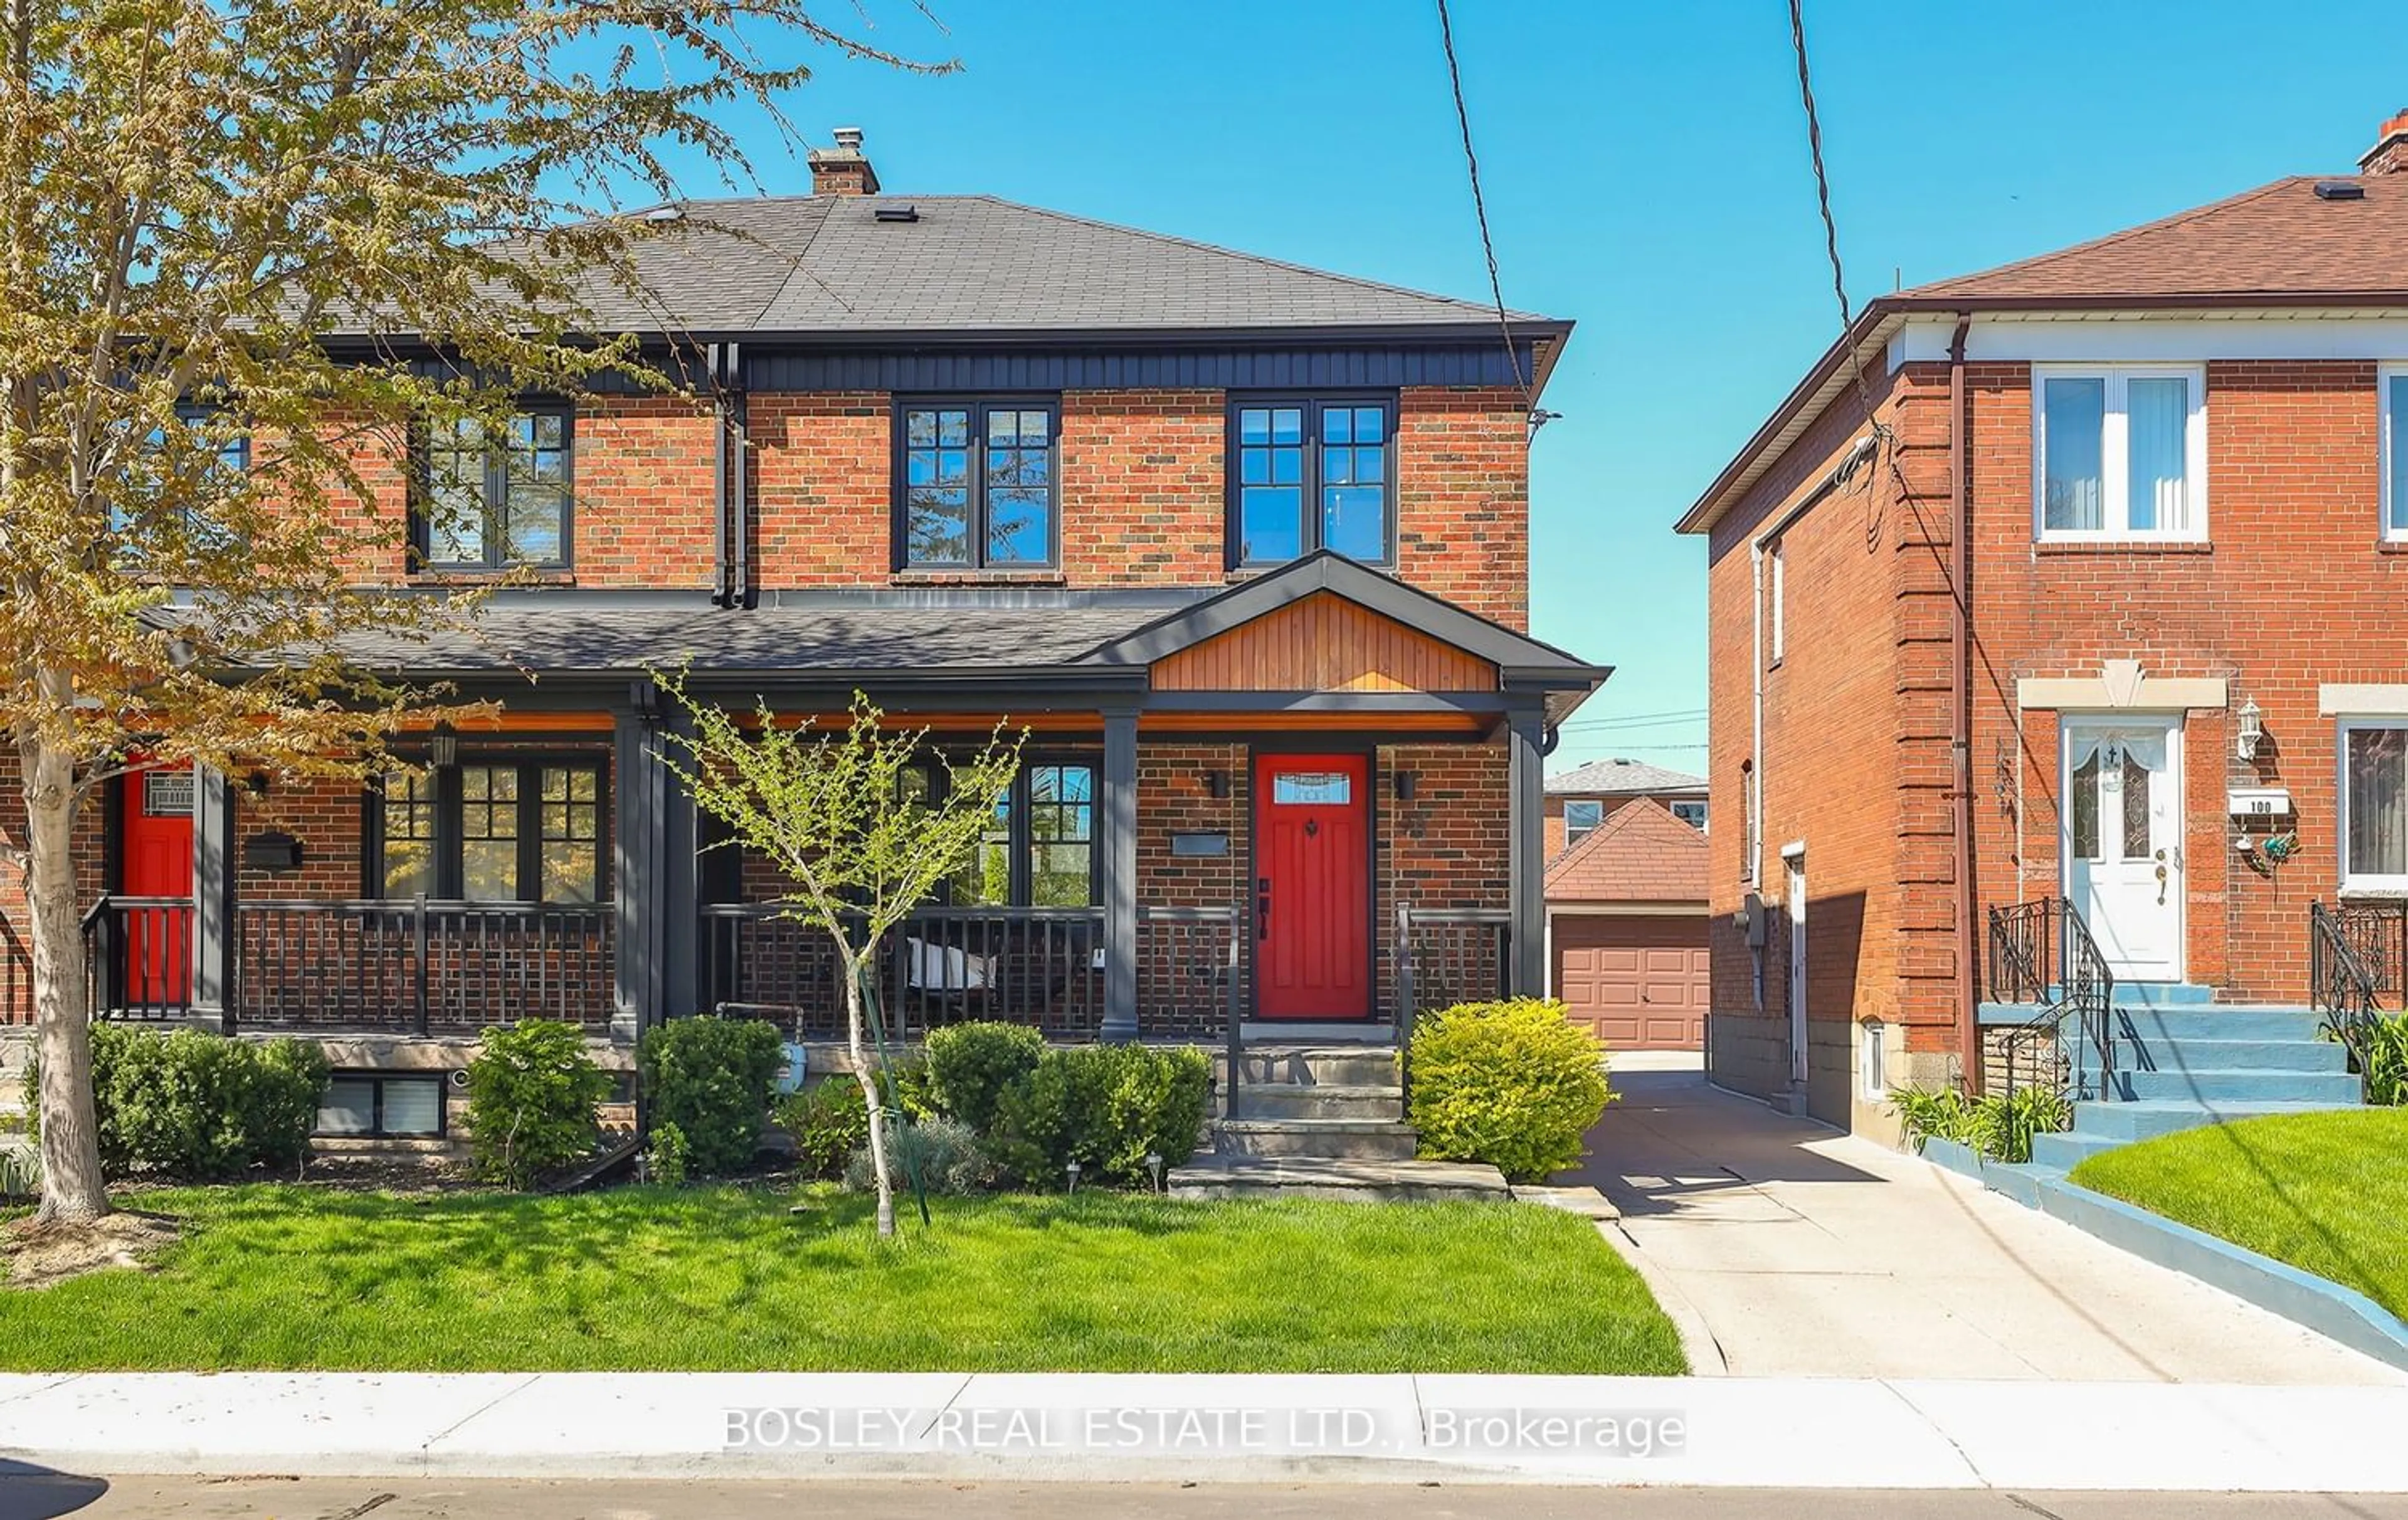 Home with brick exterior material for 98 Primrose Ave, Toronto Ontario M6H 3V3